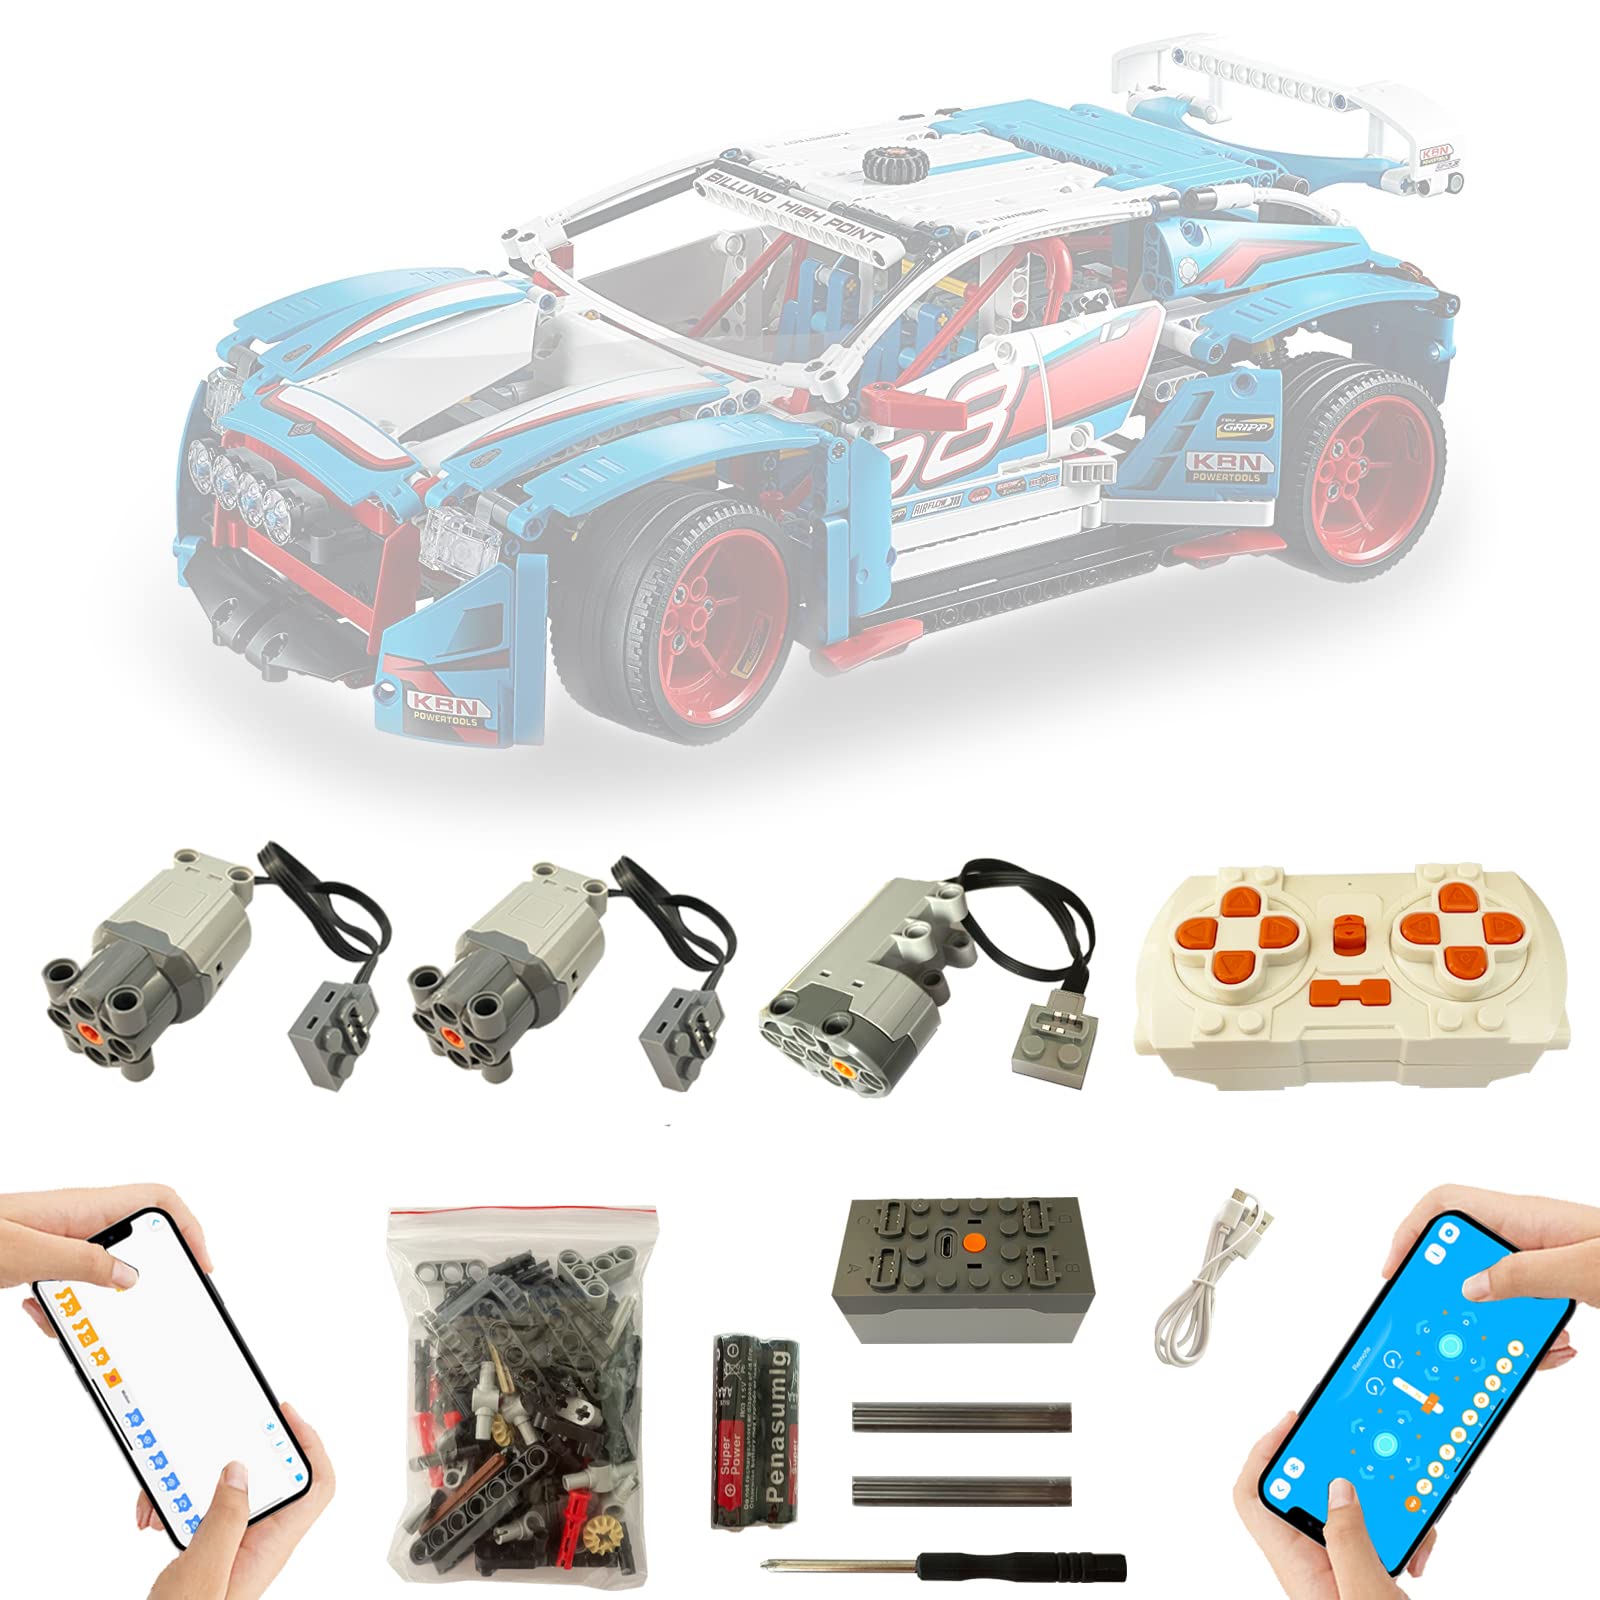 Motor und Fernbedienung Upgrade Zubehör für Lego Rally Auto 42077, Metal Axle, APP 4-Modi-Steuerung, Motorenset Kompatibel mit Lego 42077 Technic Rallyeauto(Nicht Enthalten Modell)